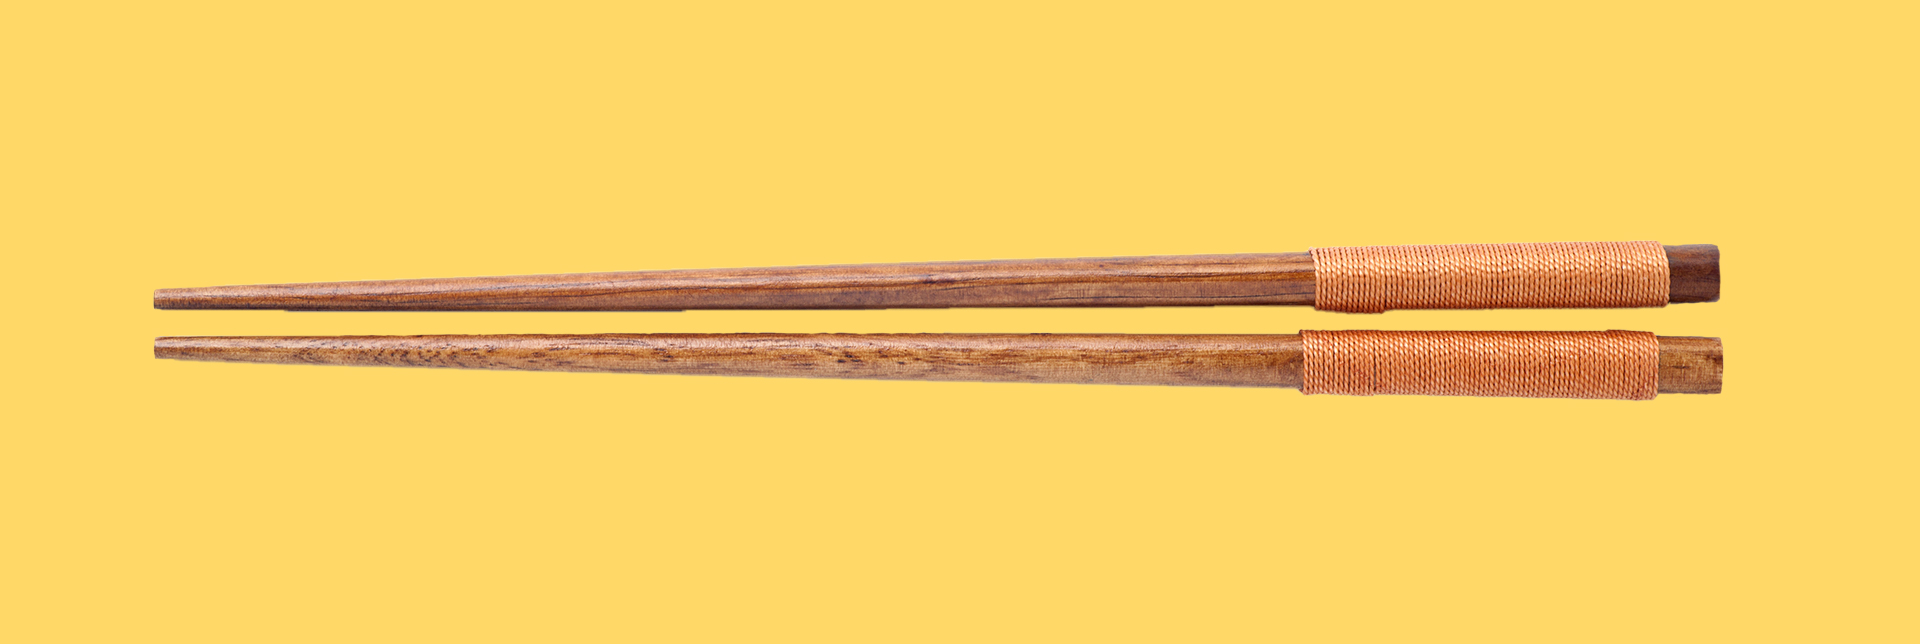 Chopsticks-header.jpg